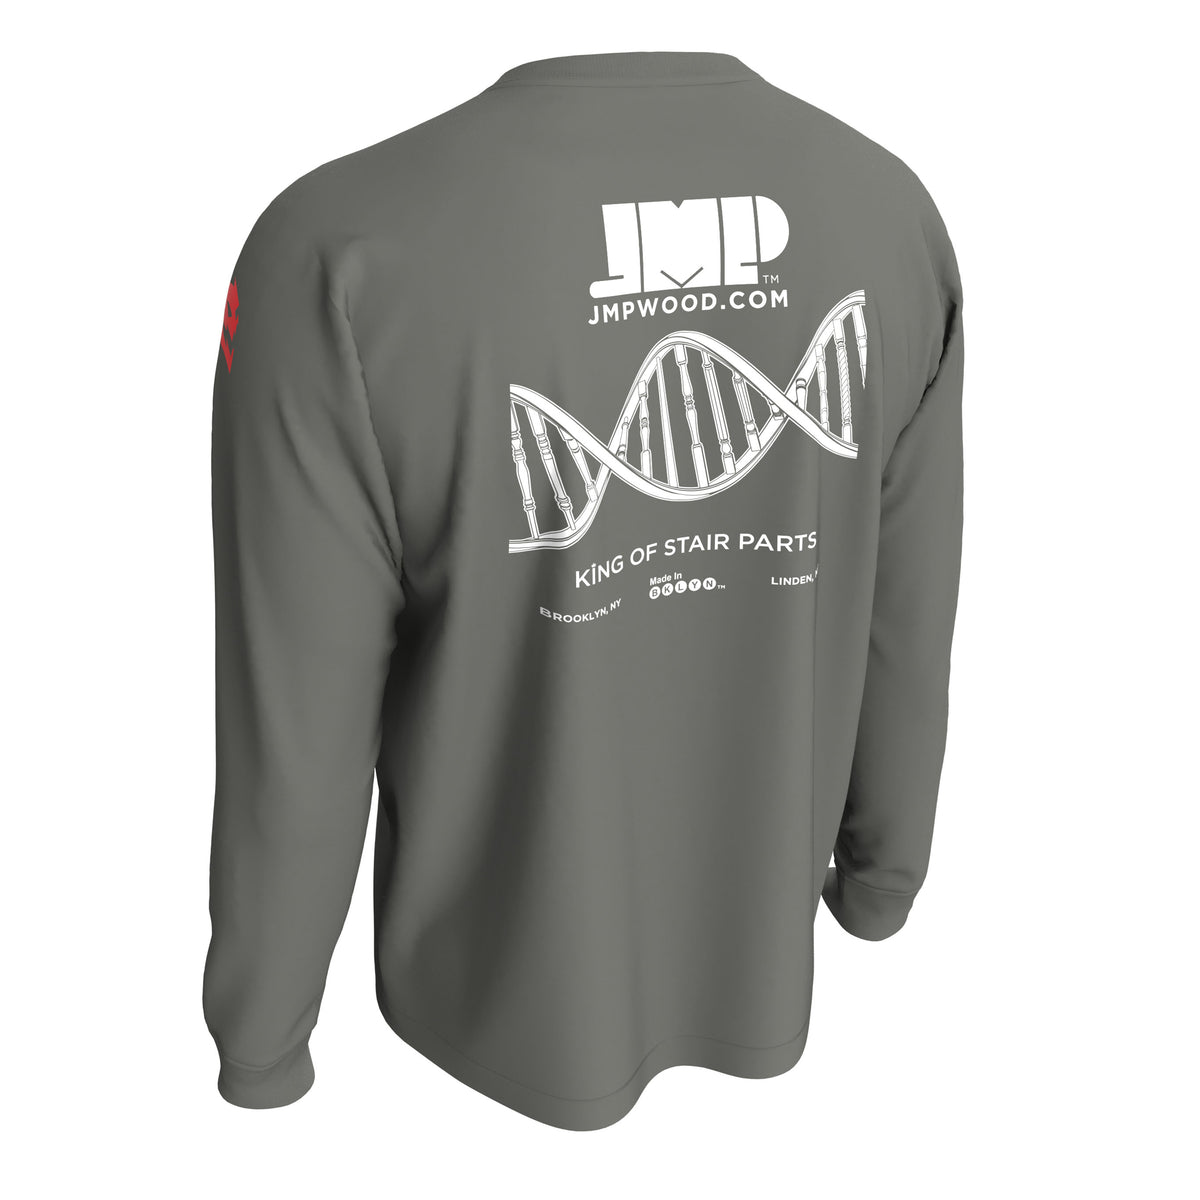 JMP Wood Cotton Long Sleeve Shirt